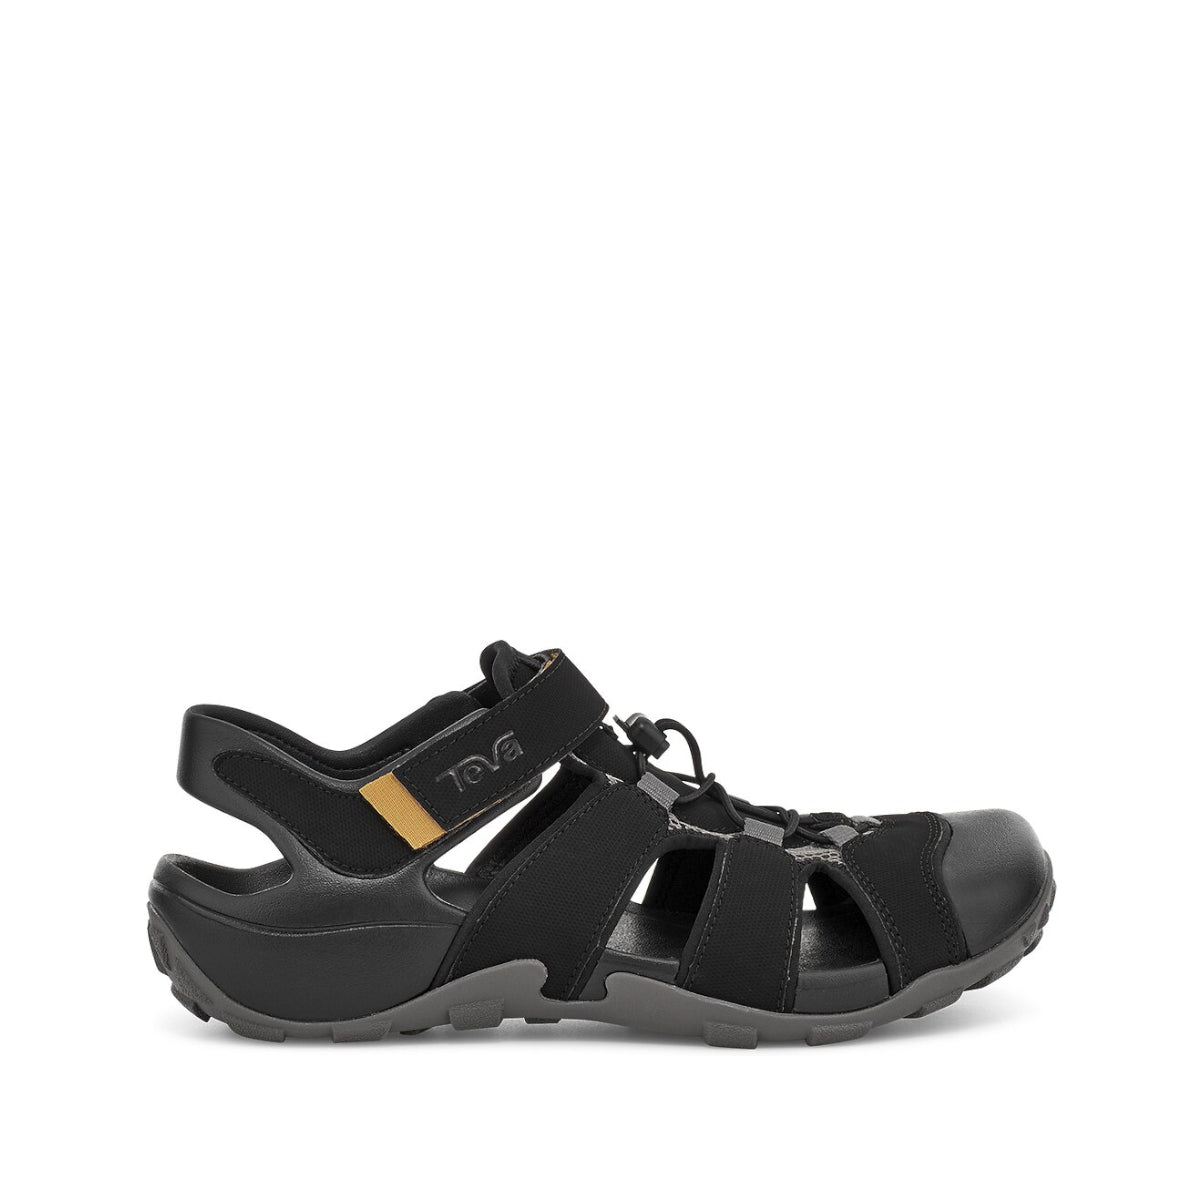 M Flintwood - shoe&amp;me - Teva - Sandal - Eco Collection, Mens, Sandal, Shoes, Summer 21, Vegan